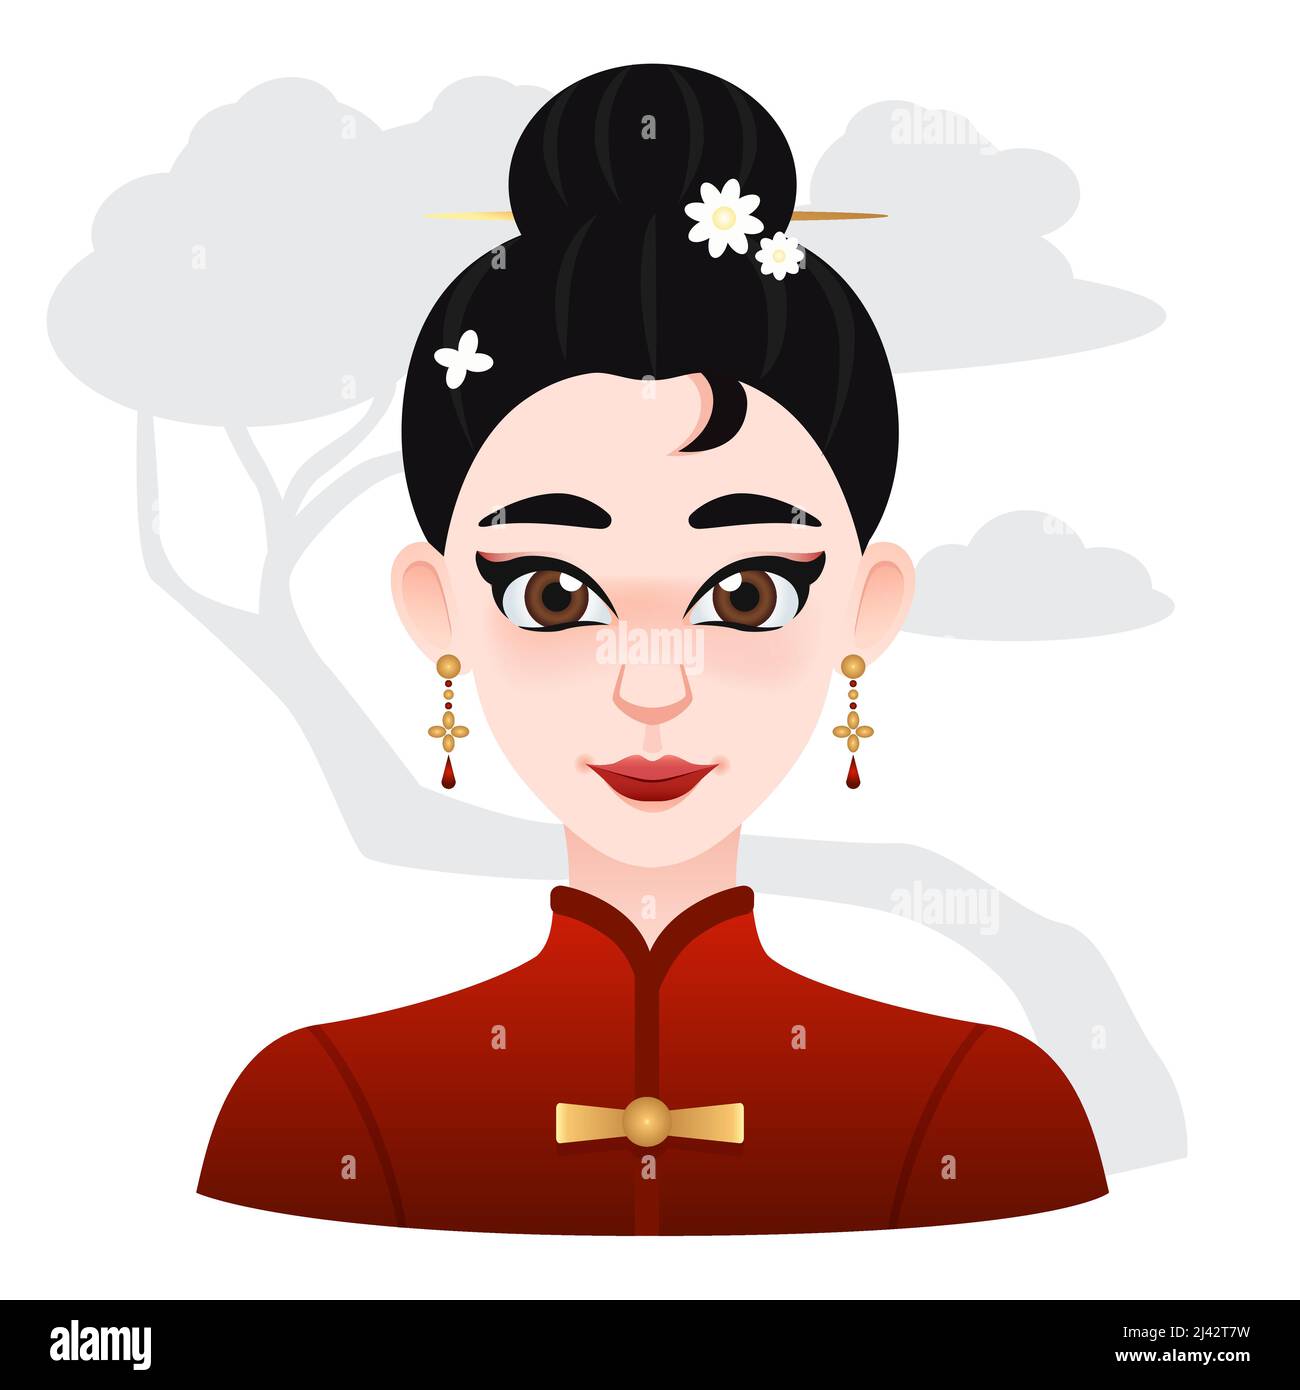 Cartoon asiatische schöne Frau. Schwarze Haare mit Blumen Clip auf der Oberseite. Orientalische Illustration für Web, Spiel oder Werbung Stock Vektor